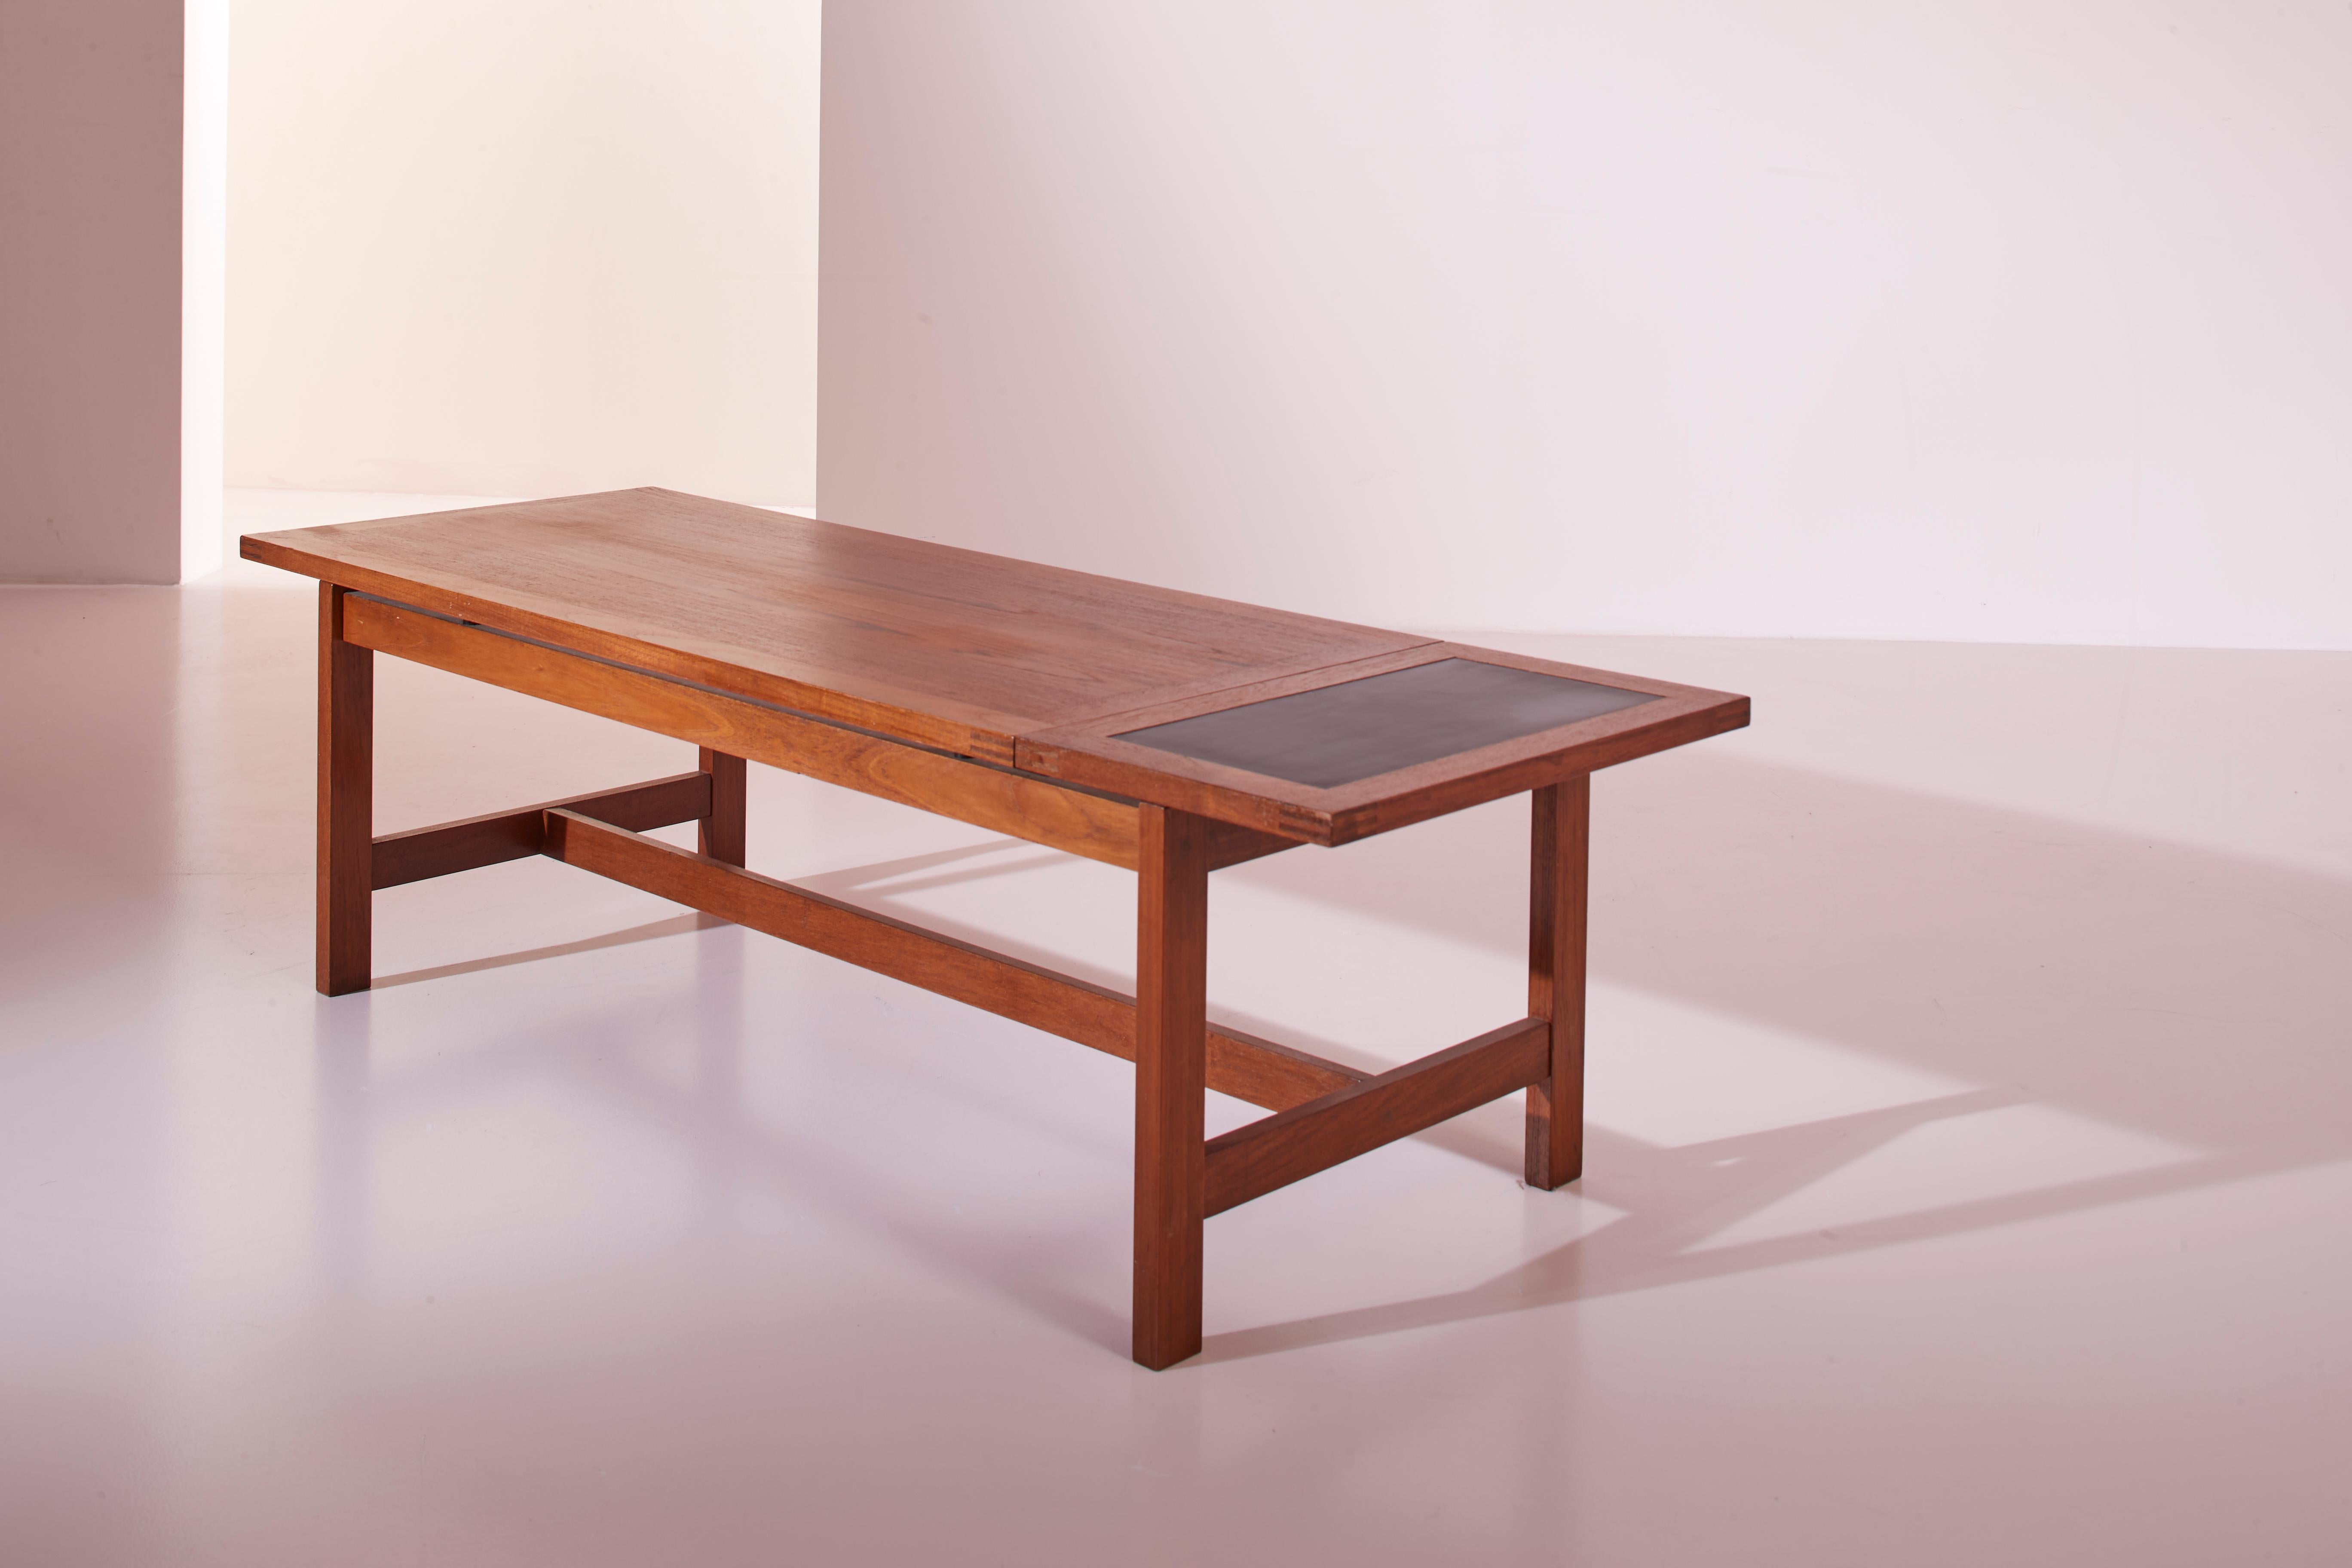 Table basse en teck massif danois, produite par France & Son dans les années soixante.

Cette table basse se distingue par sa ligne simple et un mécanisme qui permet d'agrandir la surface en cas de besoin. Le plateau principal en teck coulisse sur